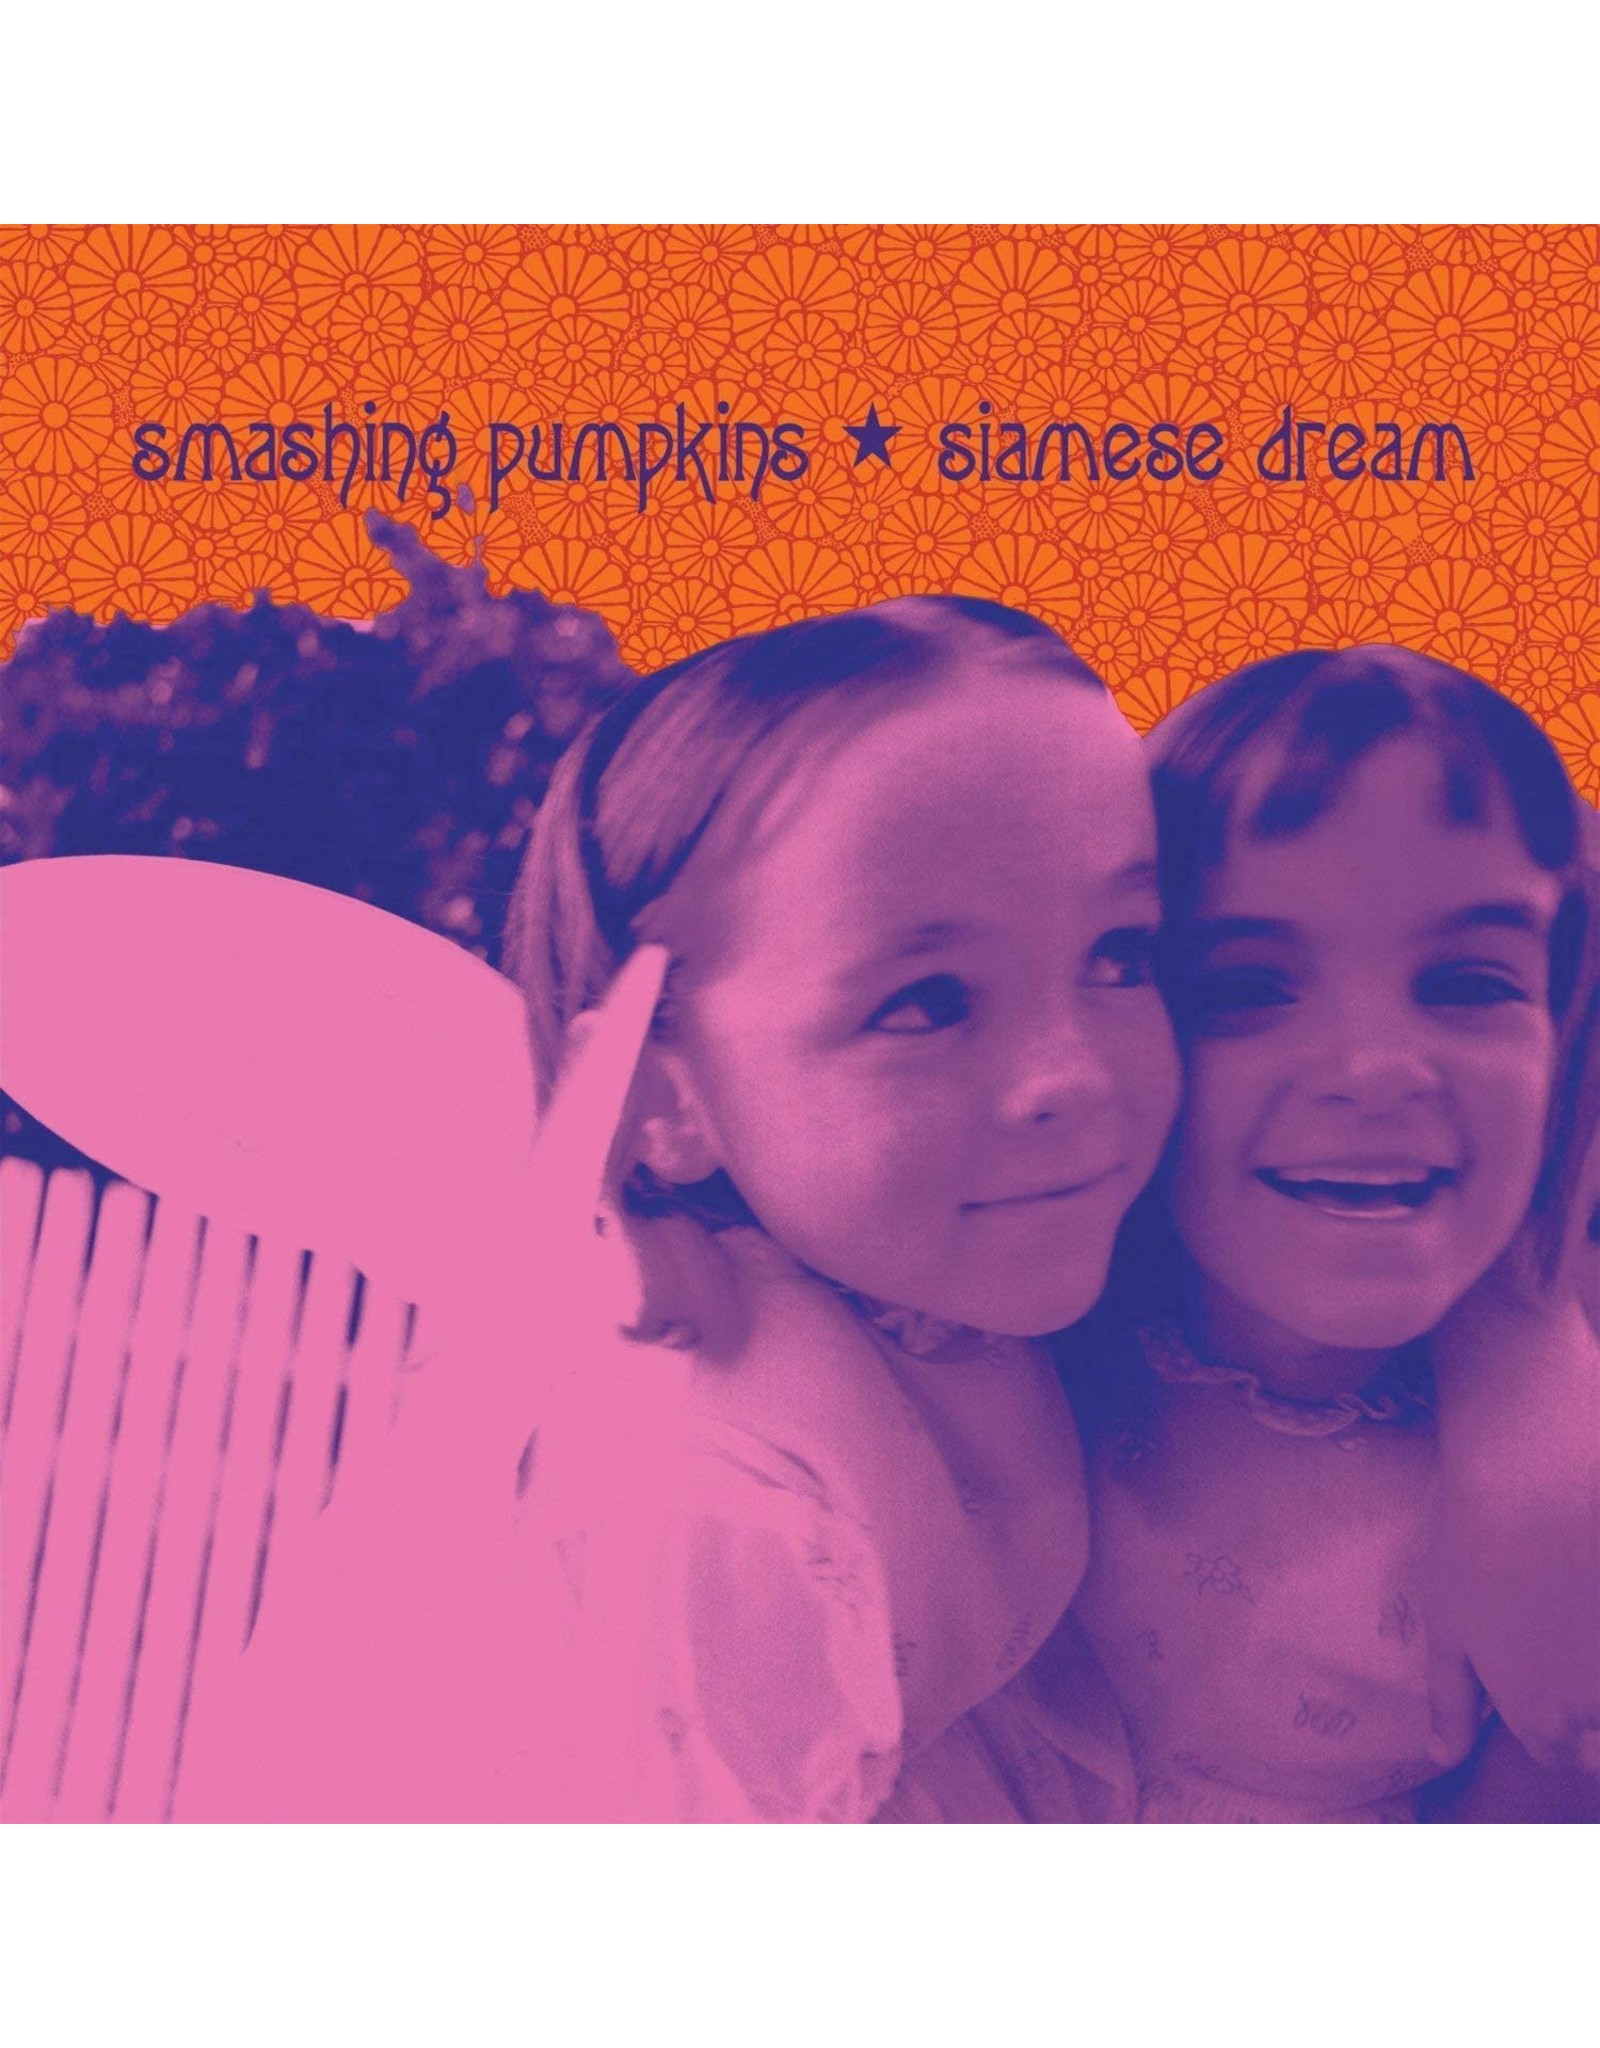 Smashing Pumpkins - Siamese Dream